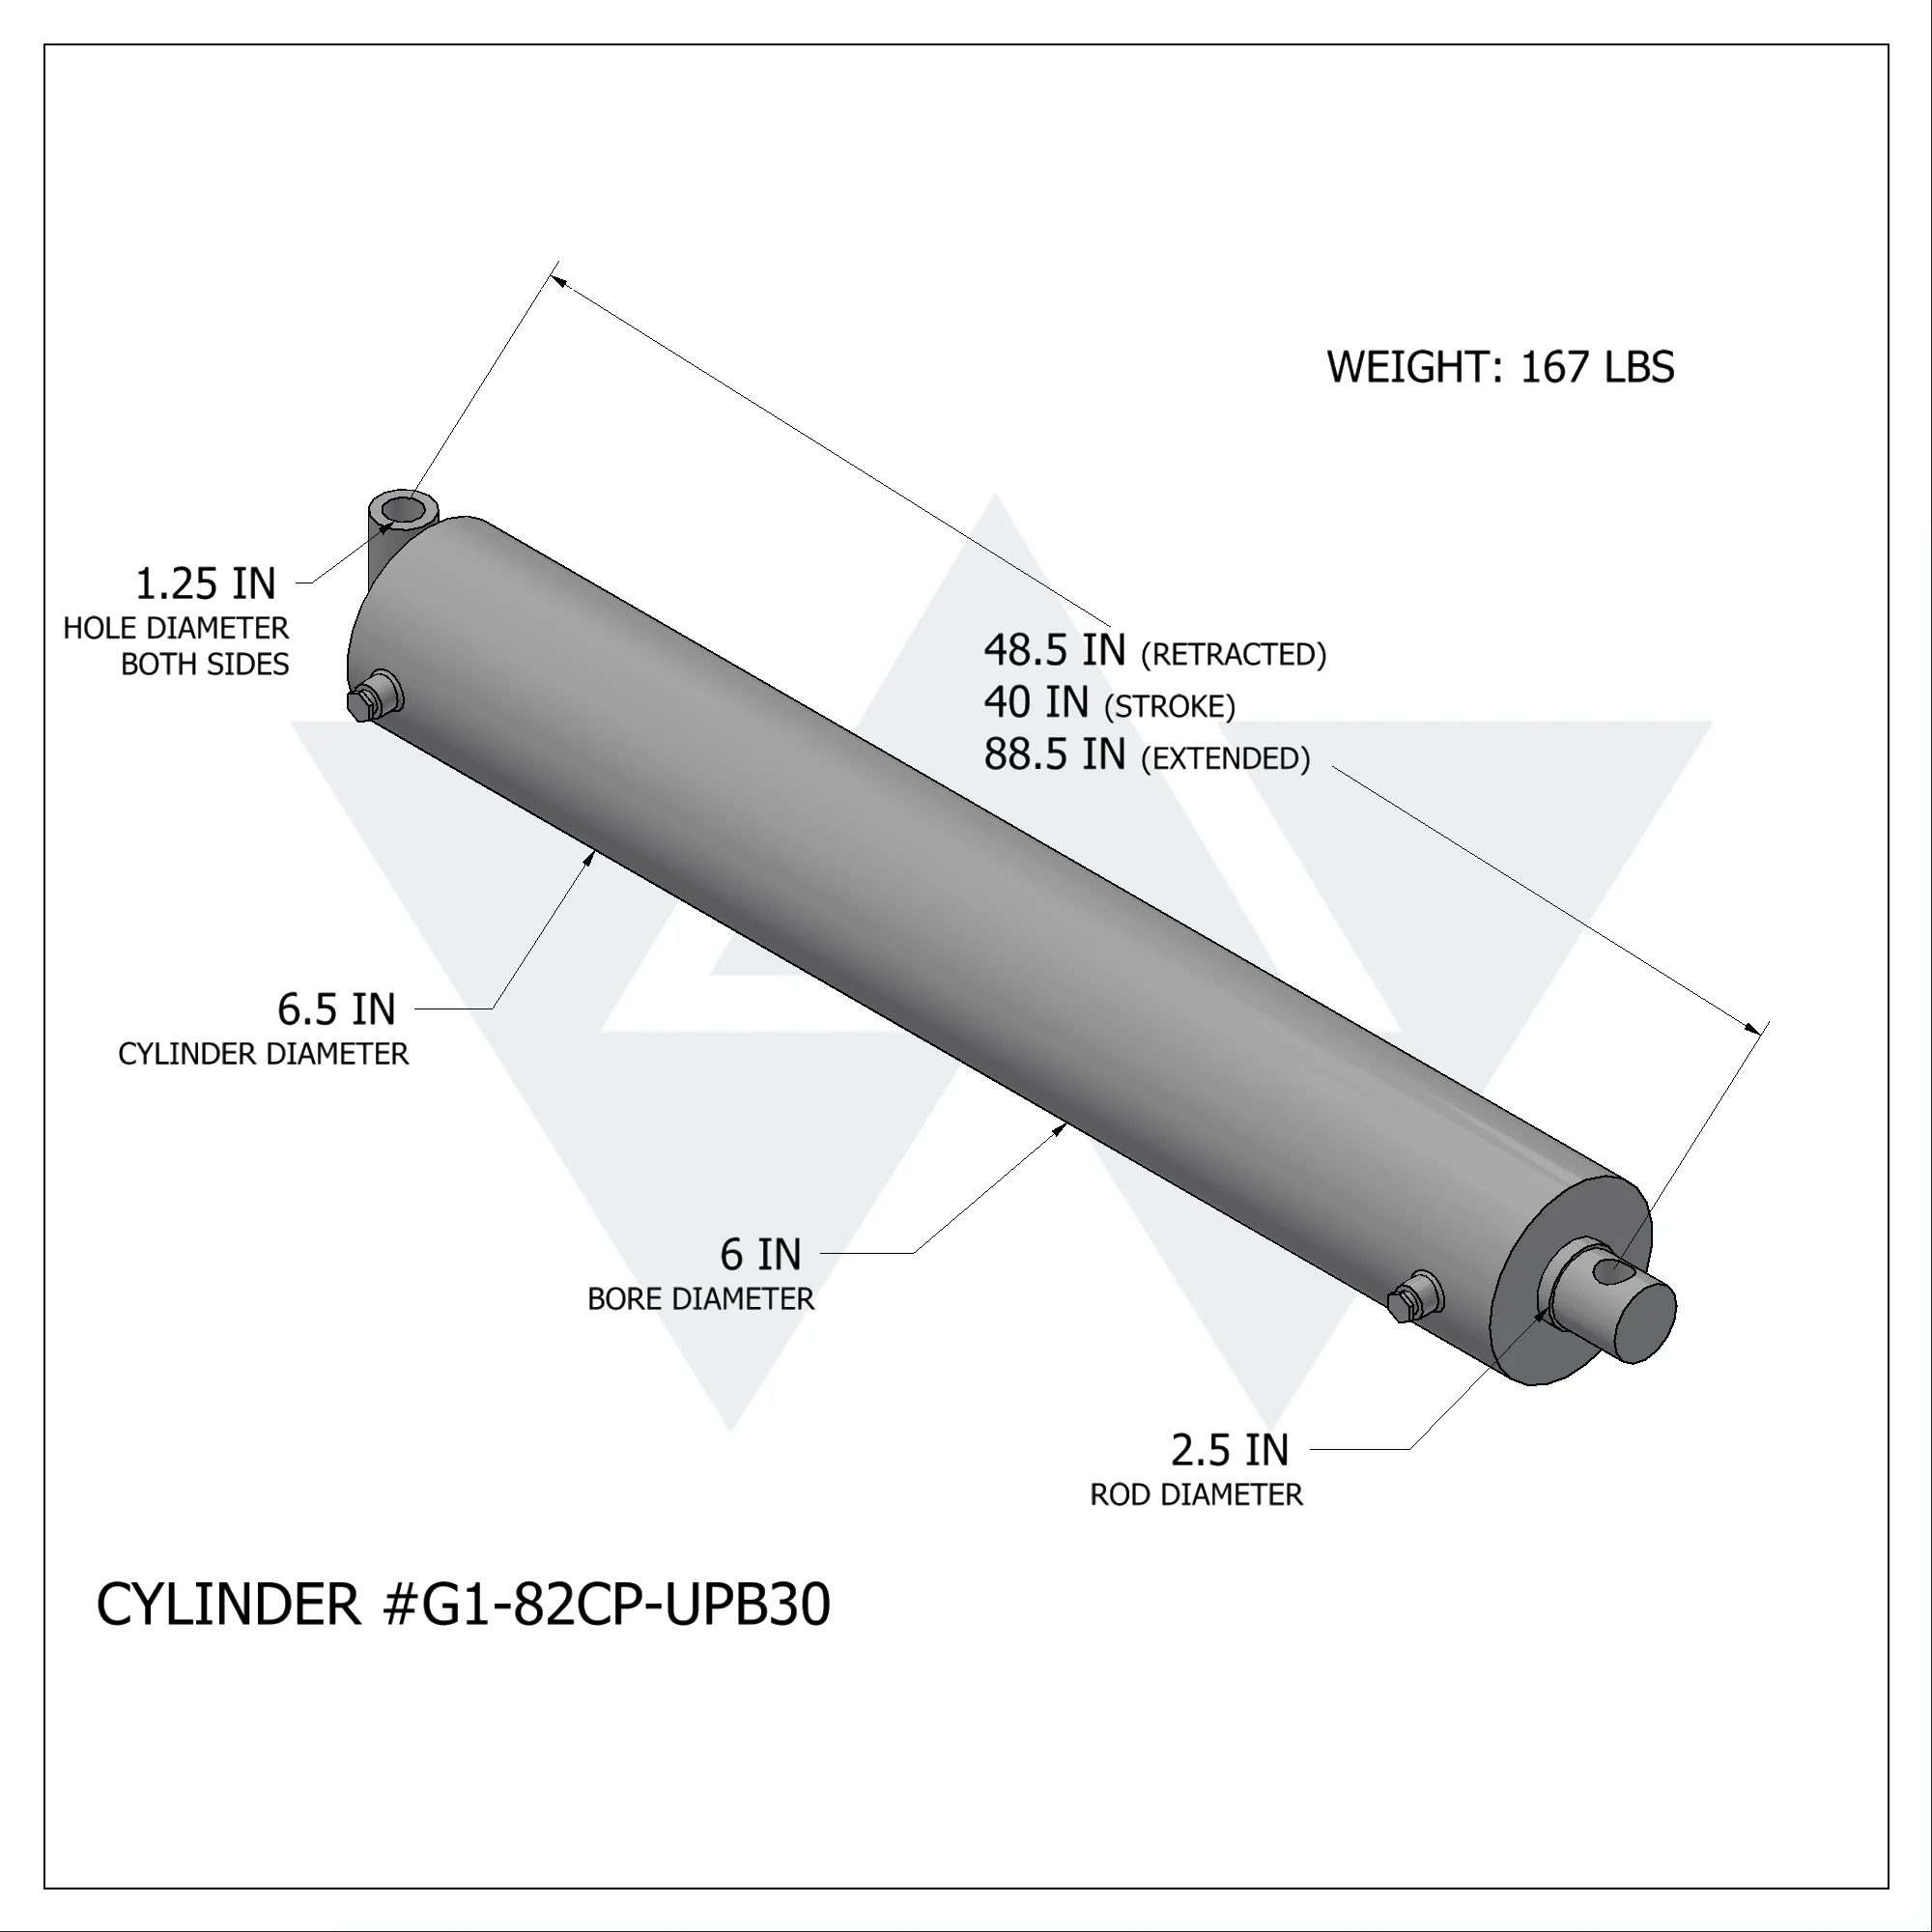 Galbreath™ Hydraulic Bypass Cylinder (6" X 3" X 40")